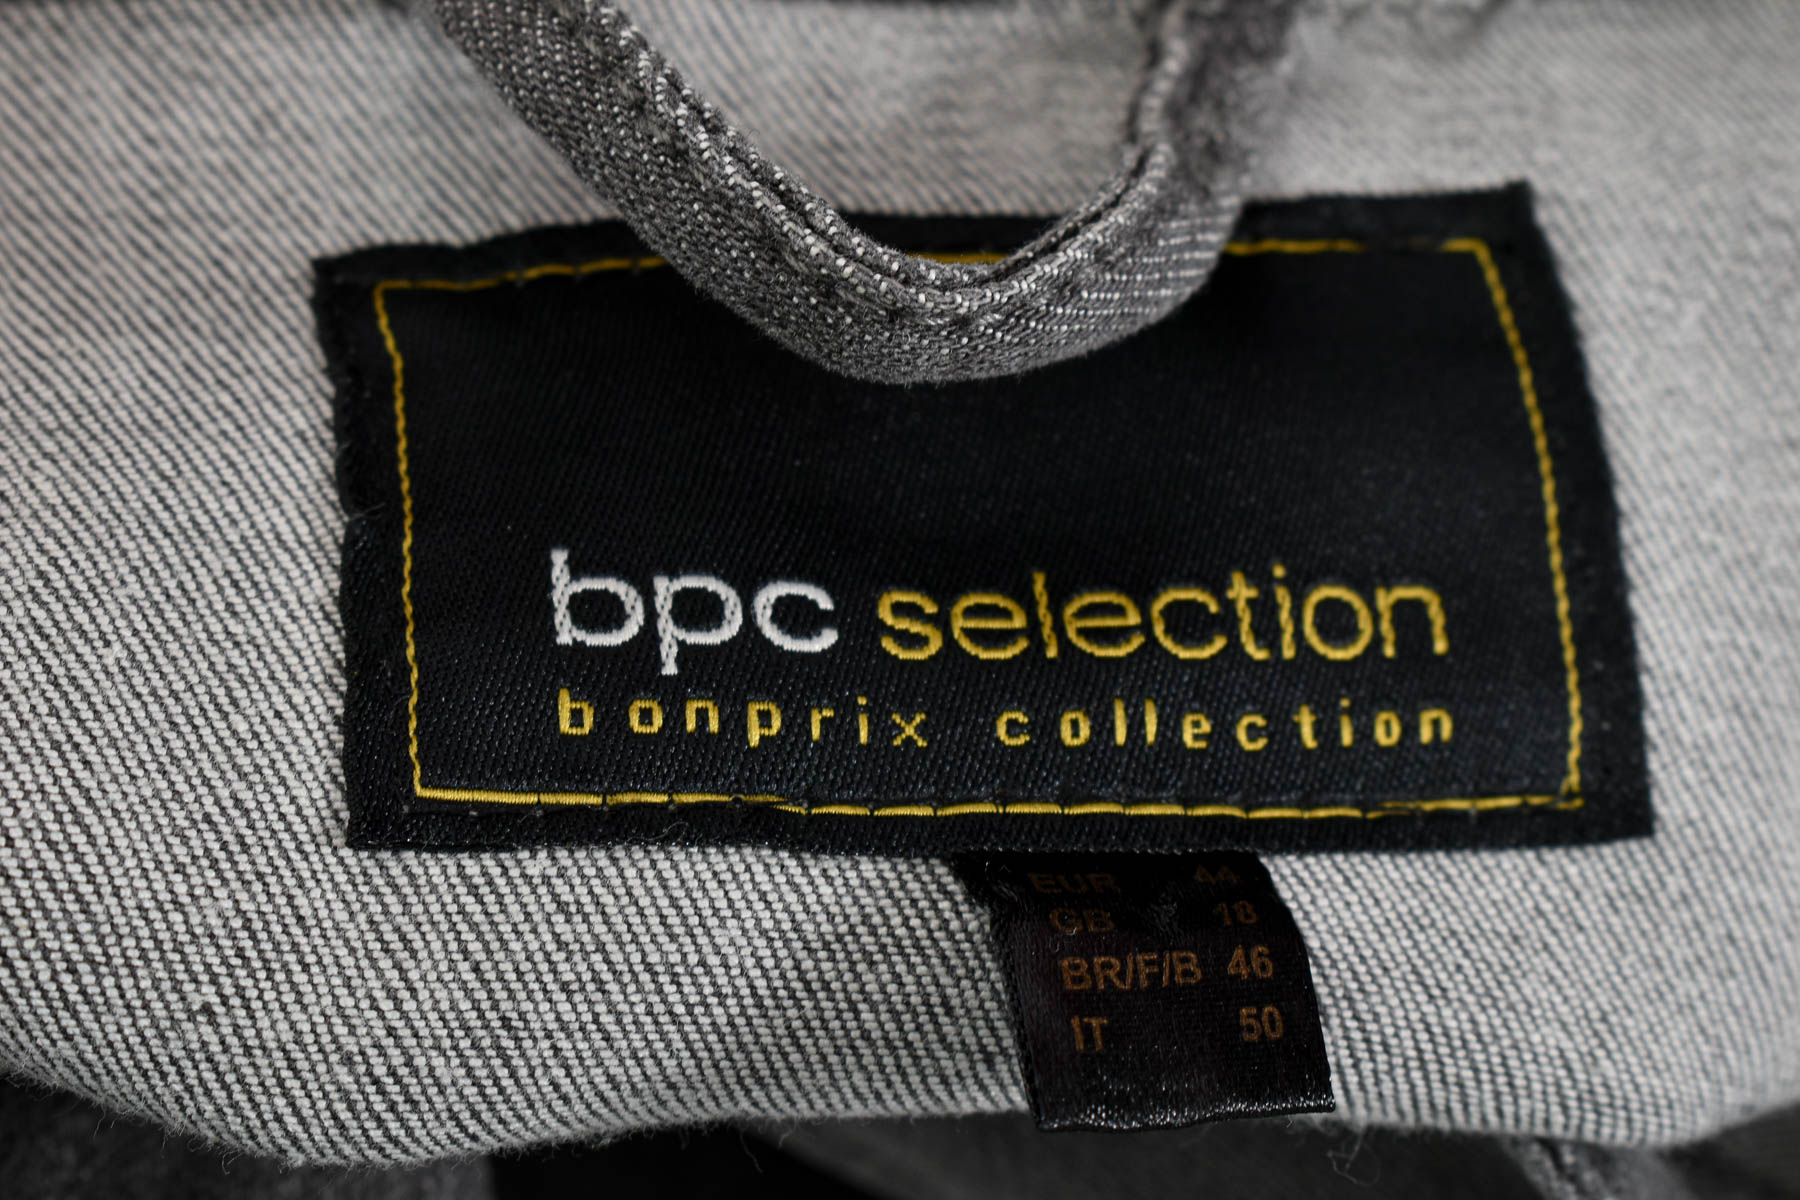 Bpc bonprix collection